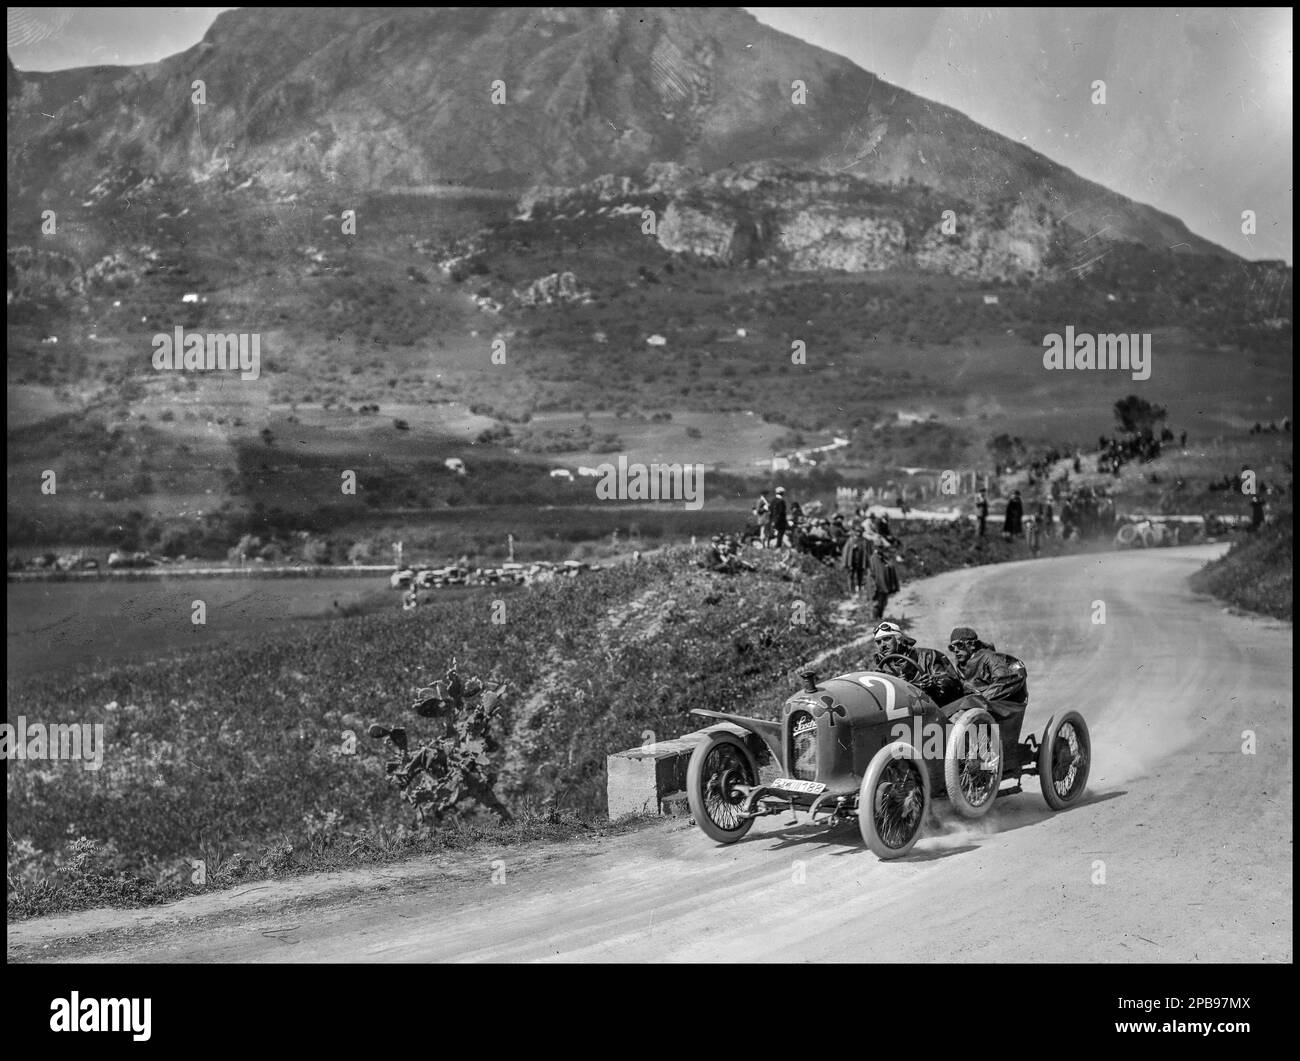 COURSE automobile TARGA FLORIO 1922 Lambert Pöcher dans son Austro-Daimler à la course de piste brute Targa Florio 1922. 2 avril 1922 Sicile Italie Banque D'Images